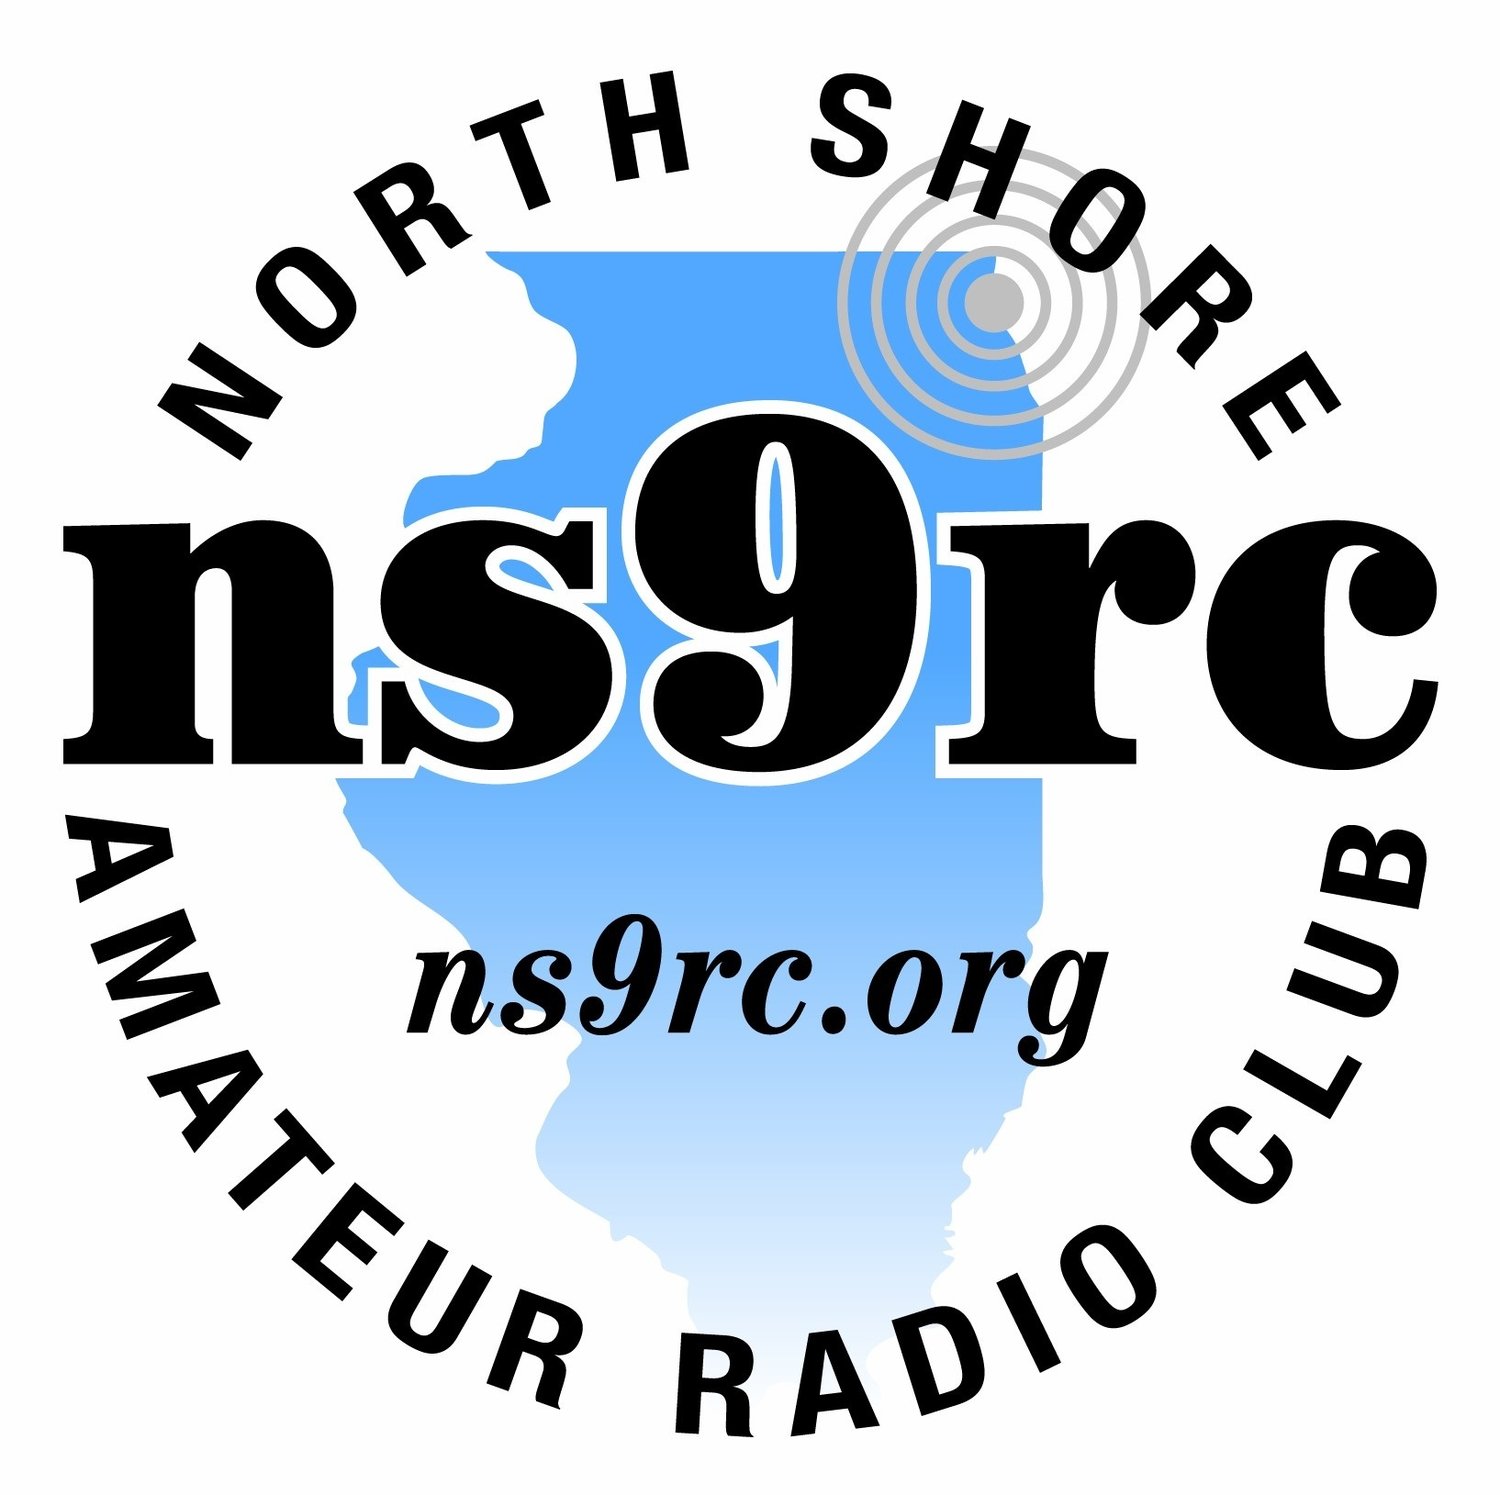 North Shore Radio Club NS9RC